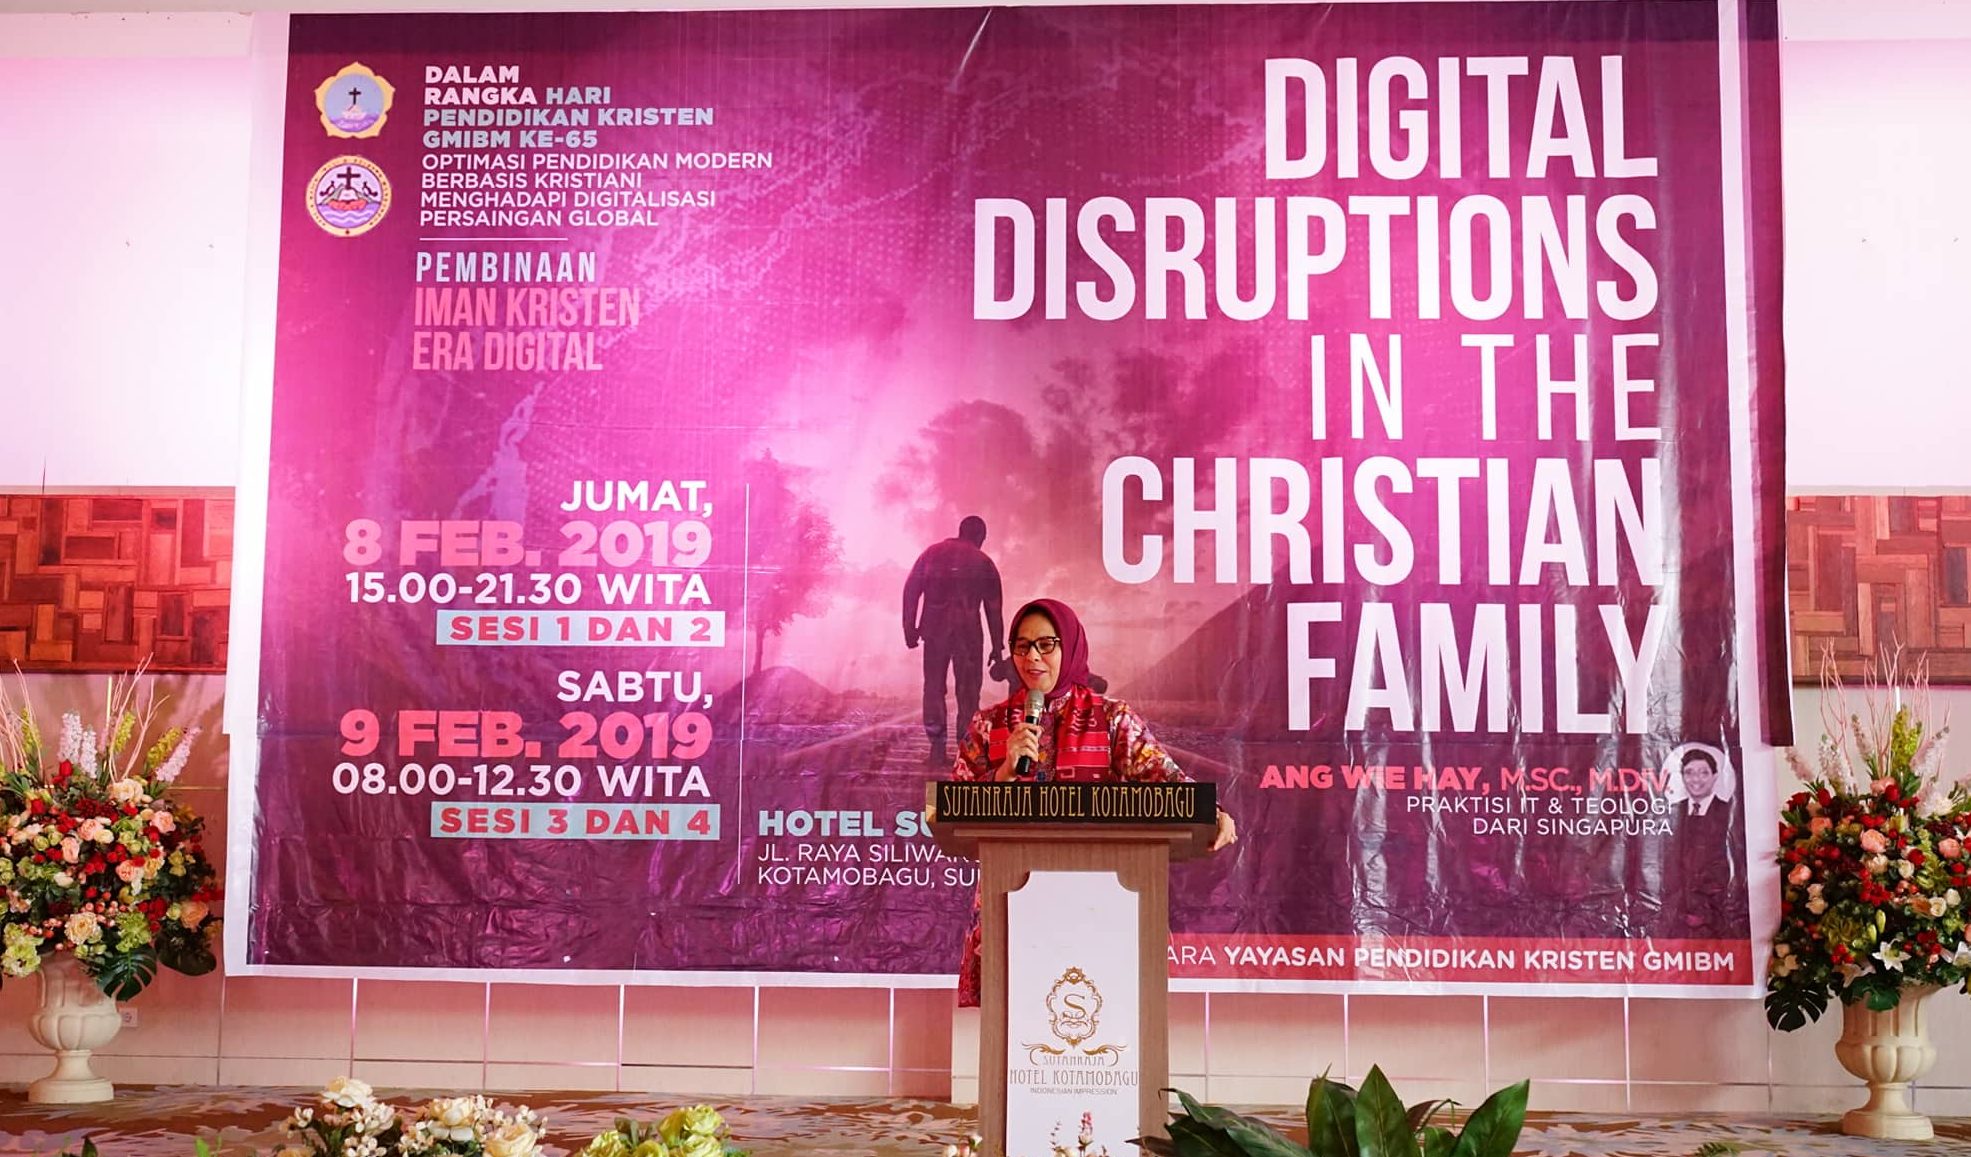 Walikota Hadiri Langsung Seminar dan Pembinaan Iman Kristen di Era Digital